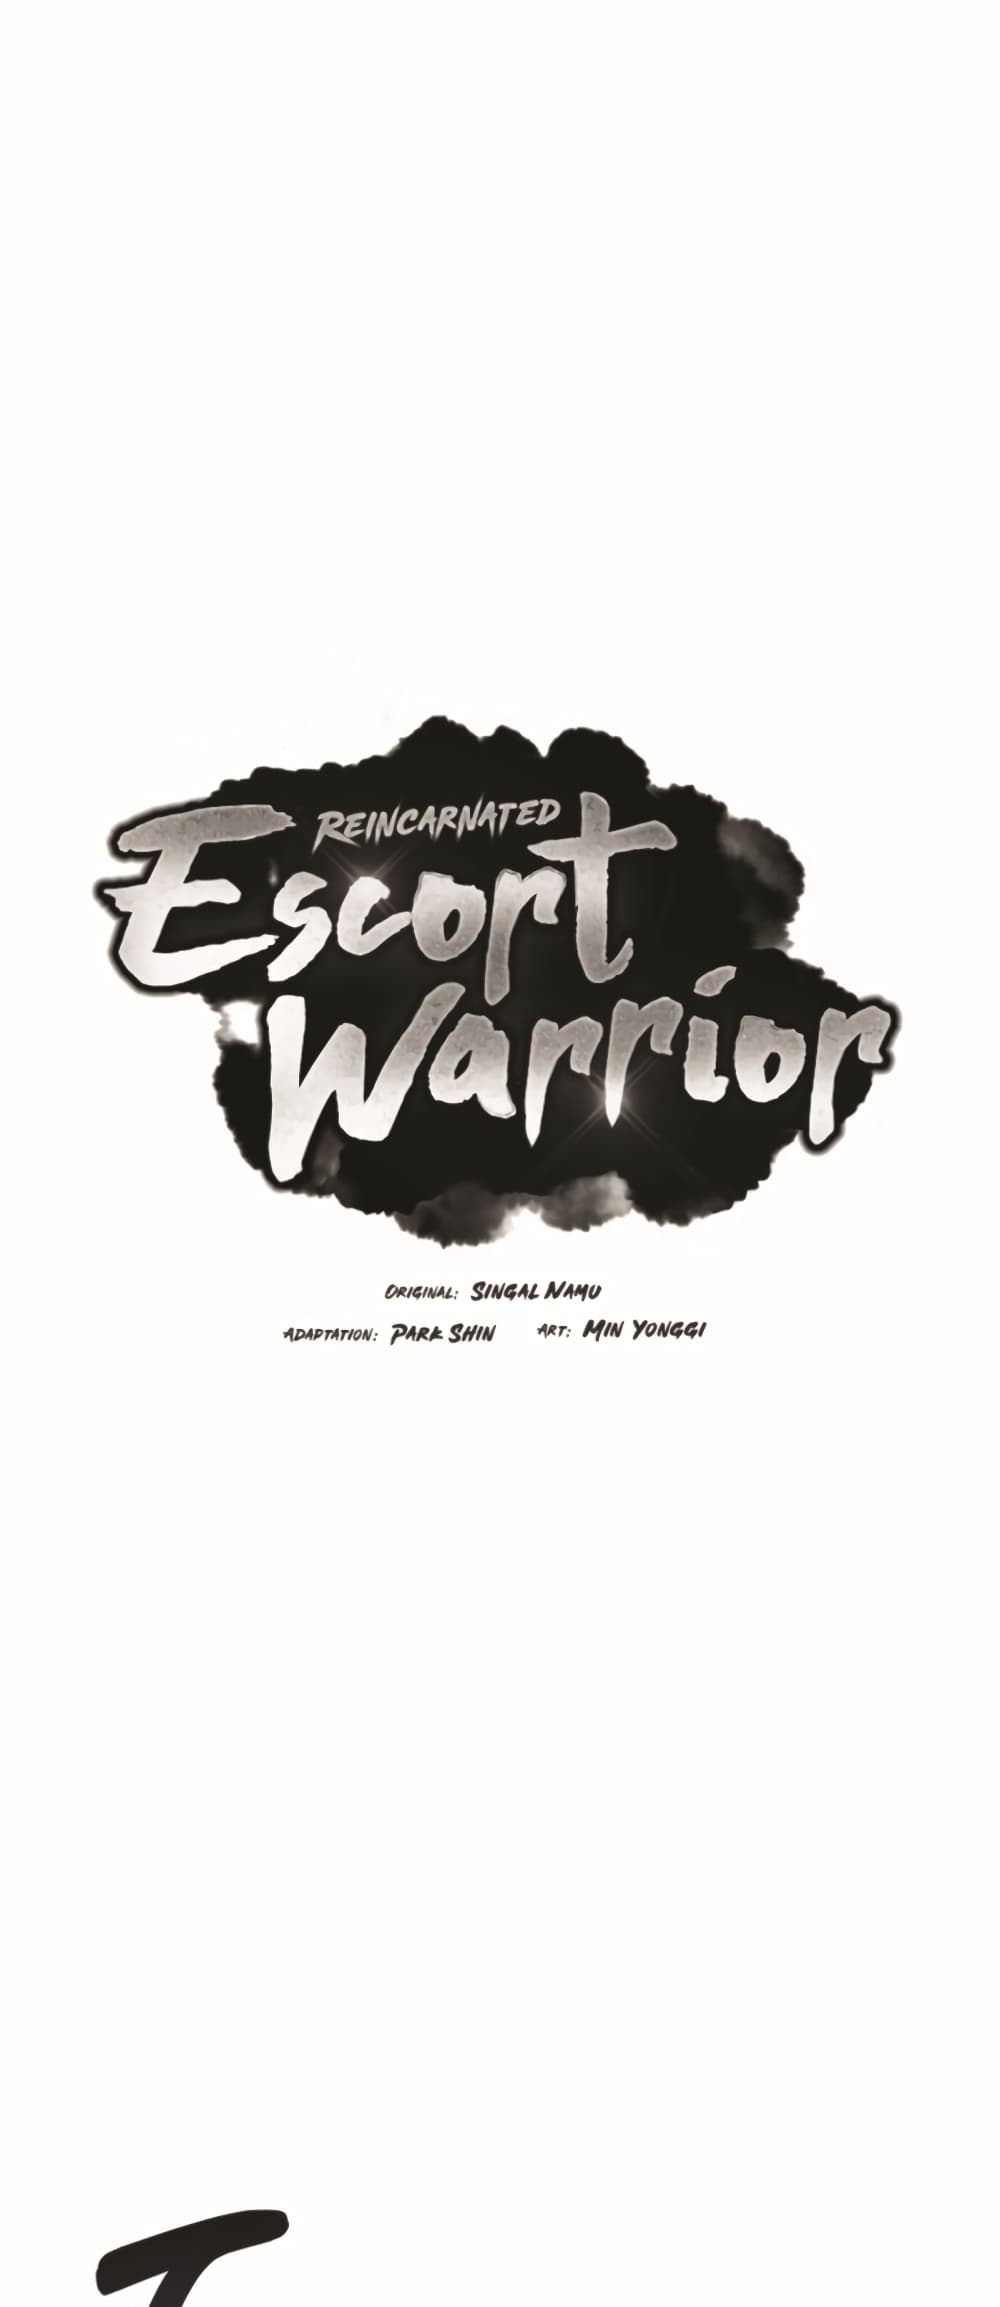 Reincarnated Escort Warrior 24-24